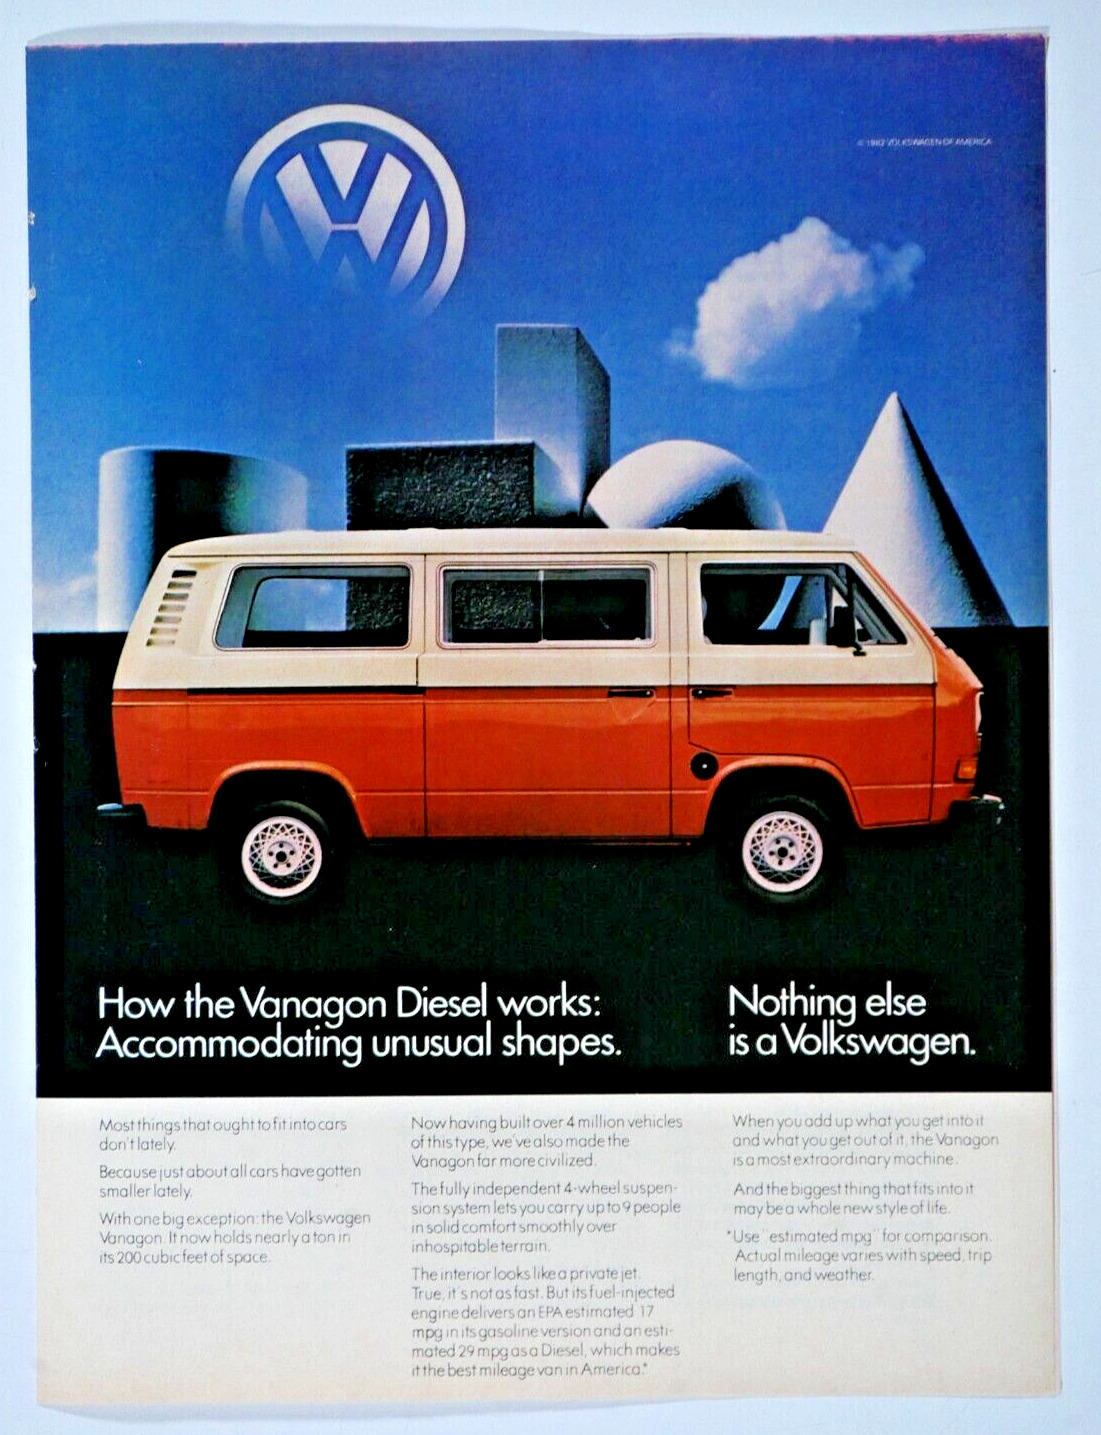 1982 Volkswagen Bus Vanagon Vintage Van And Stationwagen Original Print Ad